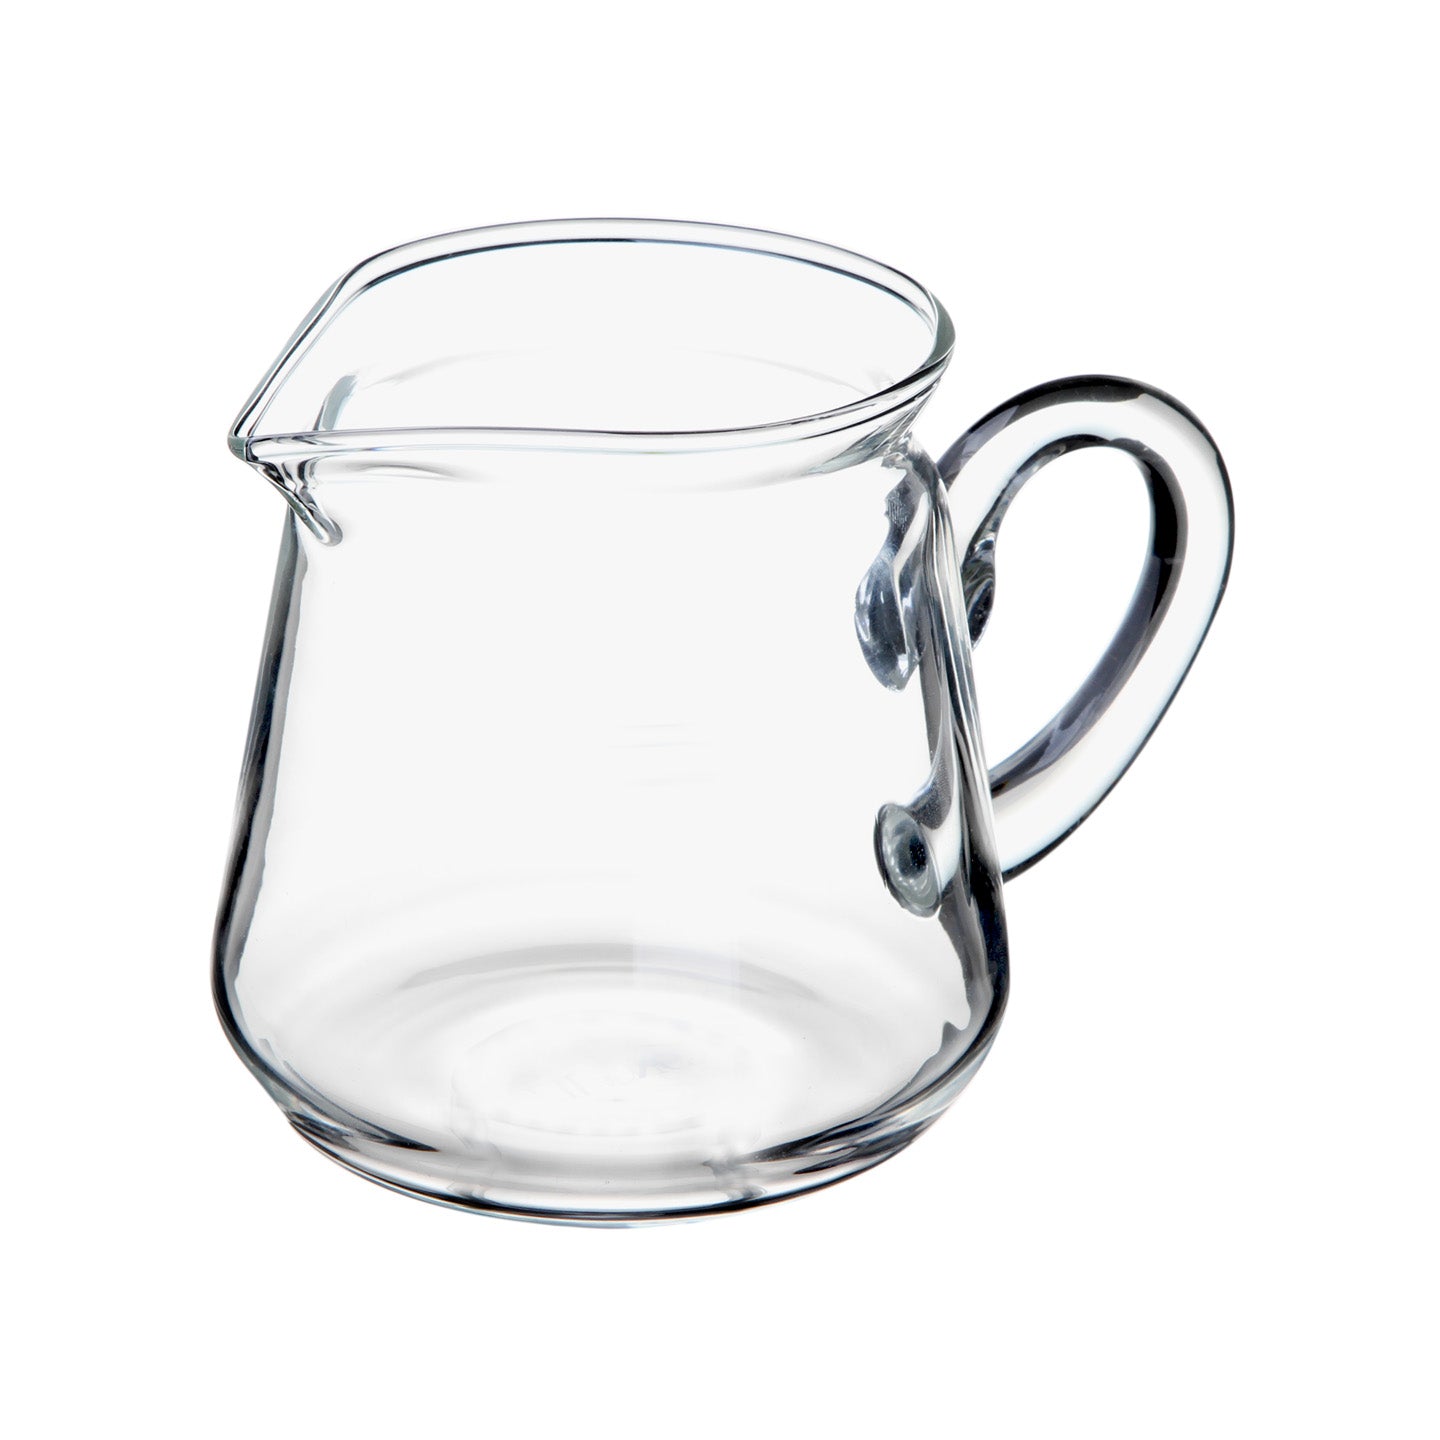 https://www.eilong.com/cdn/shop/products/glass-tea-pitcher-classical-pitcher-13oz.jpg?v=1652074262